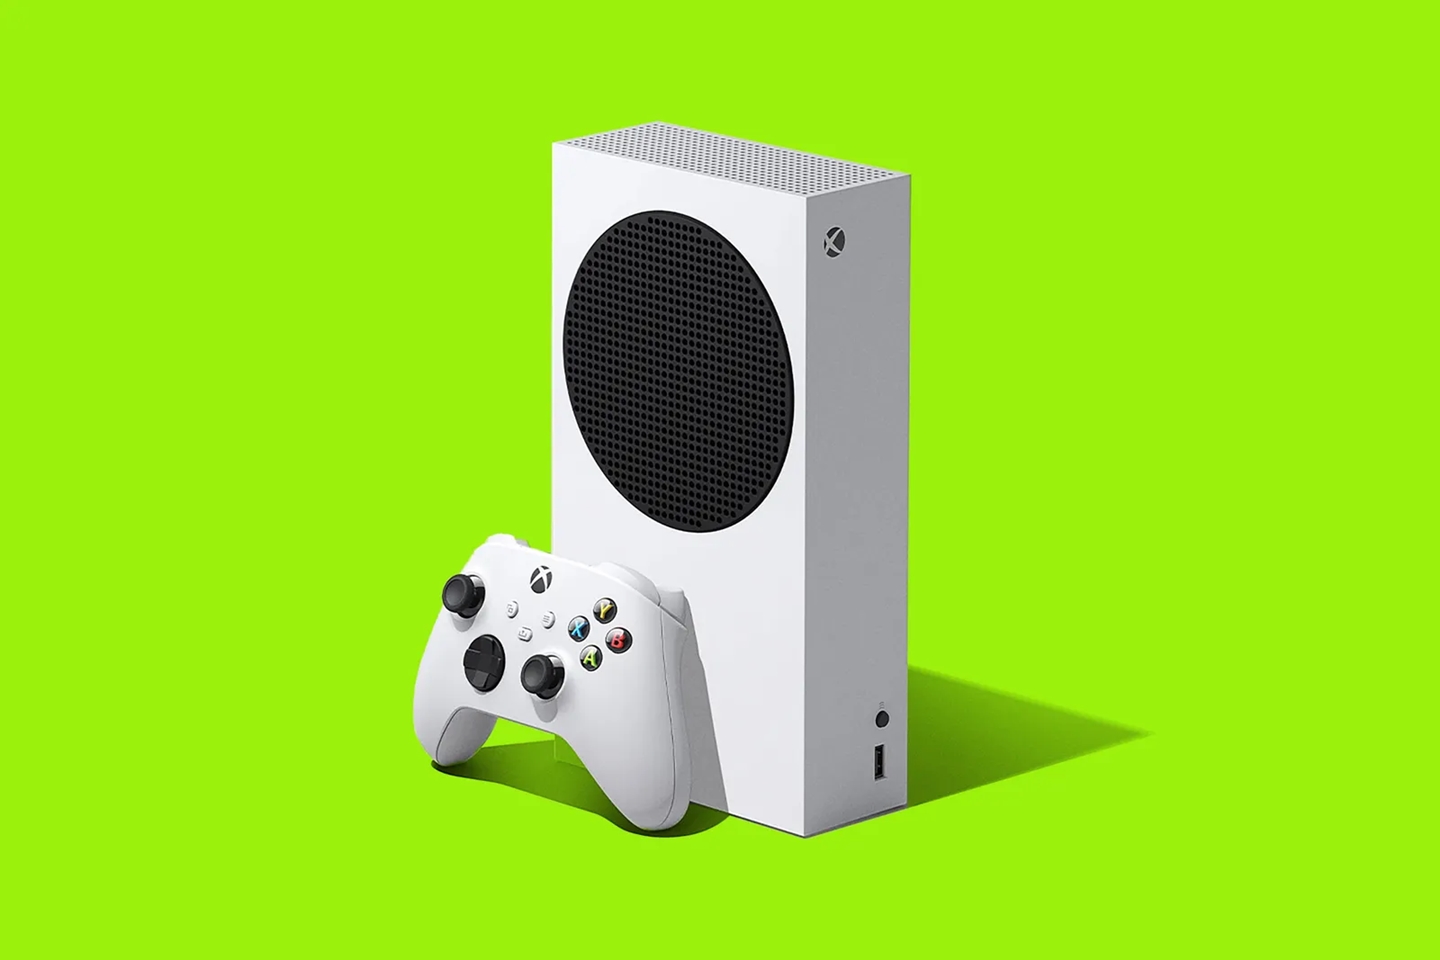 Jogos físicos de Xbox 360 não são compatíveis com o Xbox Series S, já que o console não possui leitor de discos.